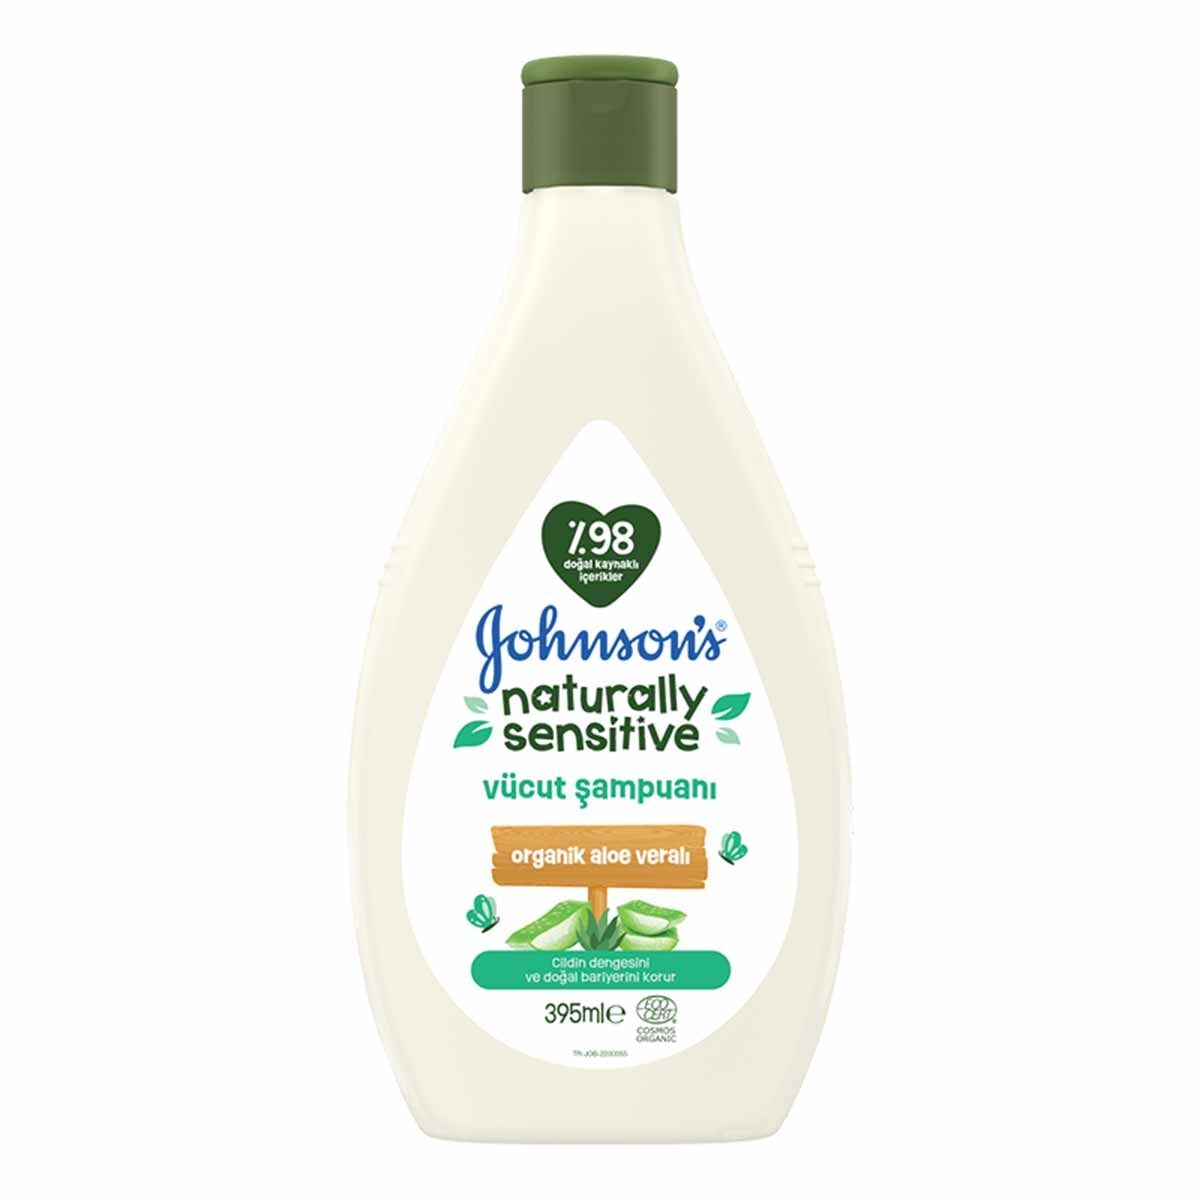 Johnson's Baby Naturally Sensitive Vücut Şampuanı 395 ml